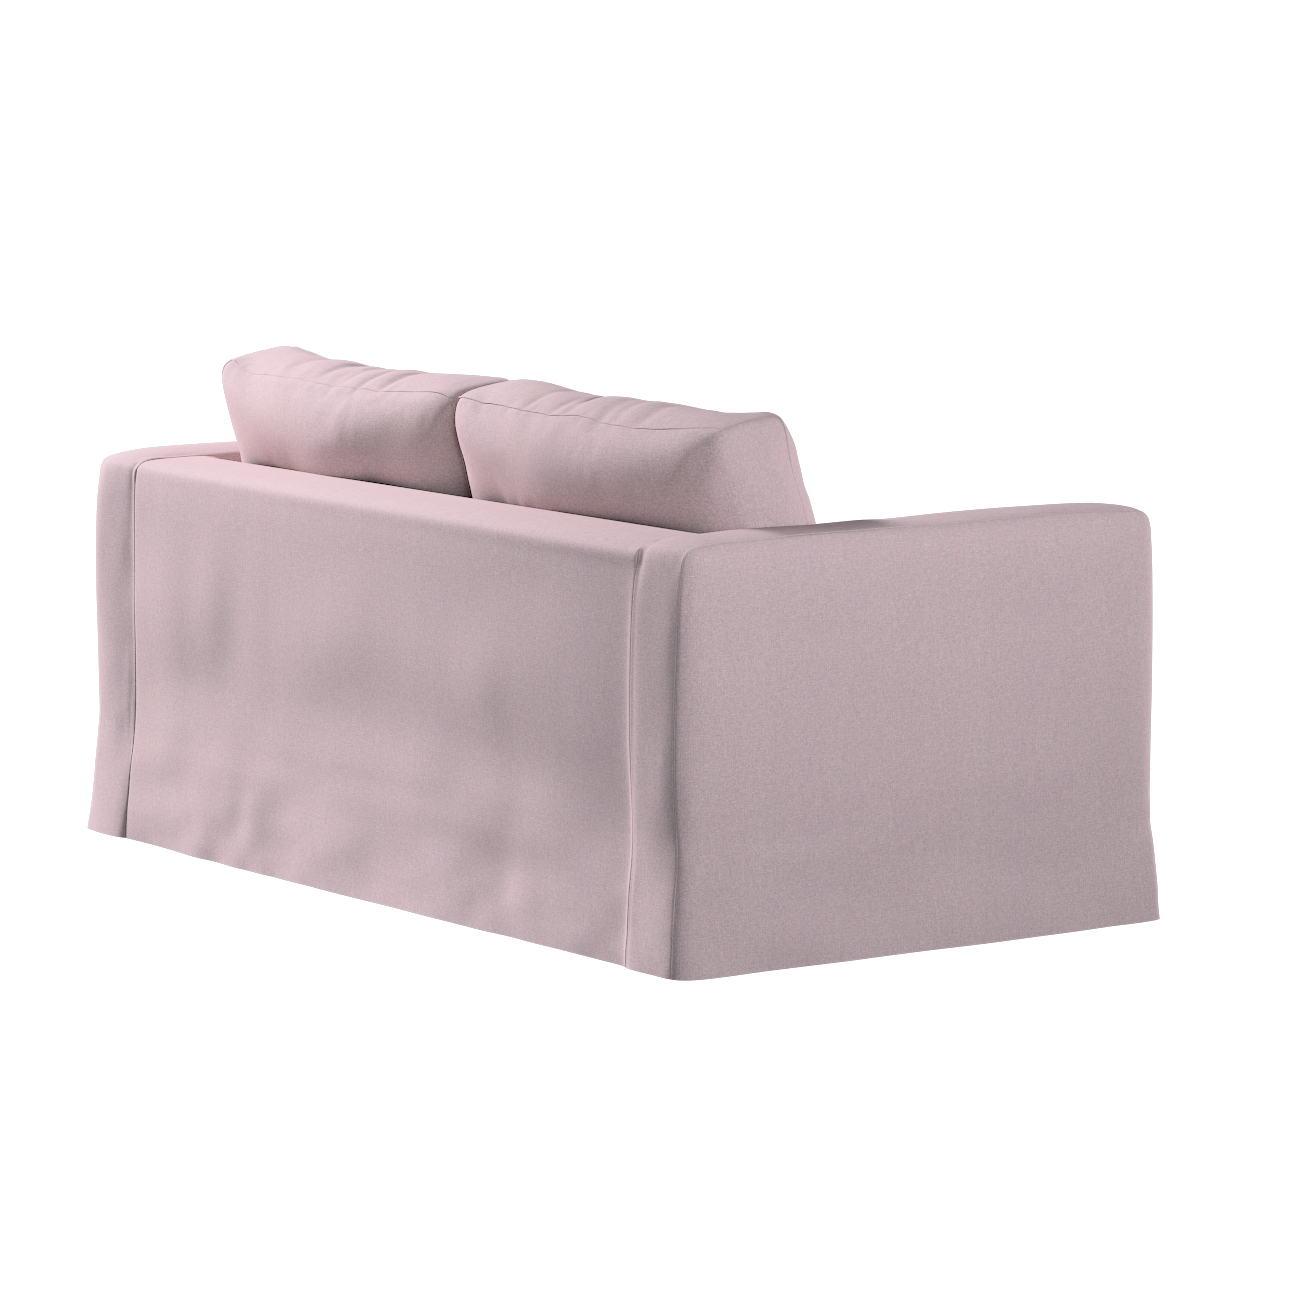 Bezug für Karlstad 2-Sitzer Sofa nicht ausklappbar, lang, rosa, Sofahusse, günstig online kaufen